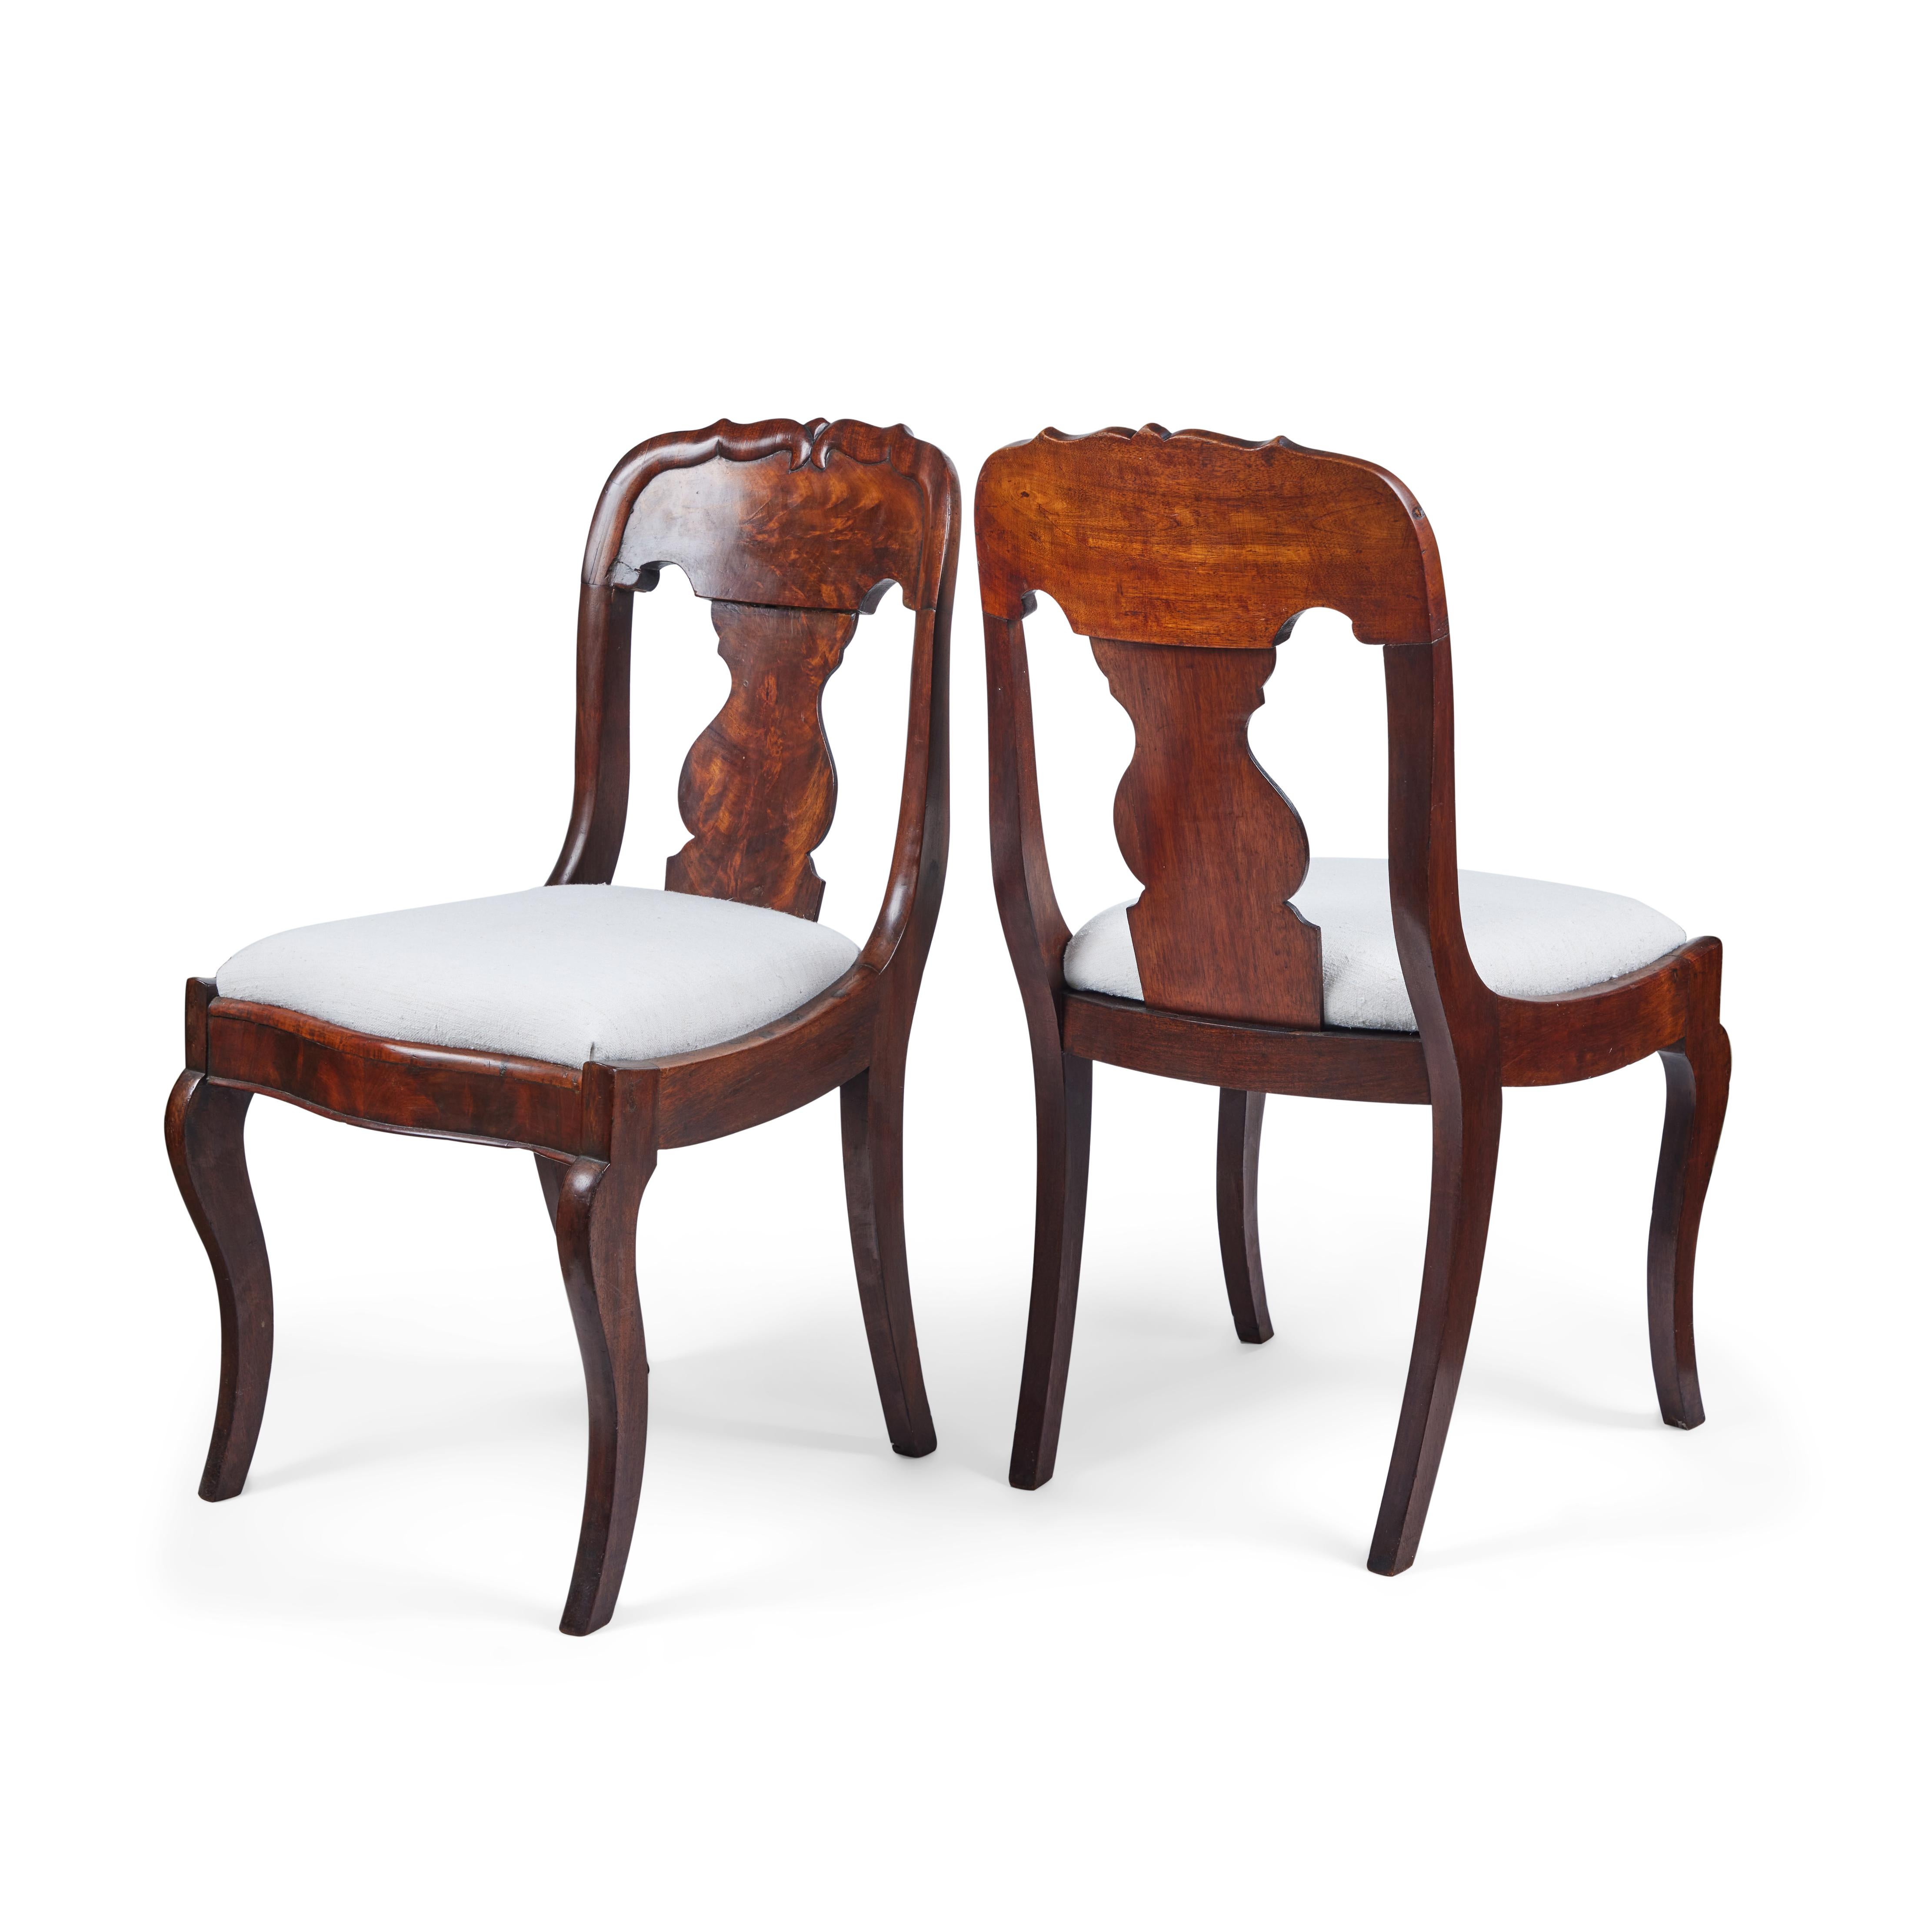 Voici une belle paire d'élégantes chaises anciennes de style Queen Anne en ronce de noyer. Ils sont de petite taille, avec de gracieux pieds cabriole et nouvellement tapissés dans un lin ivoire vintage filé à la main. L'accent mural parfait ou le